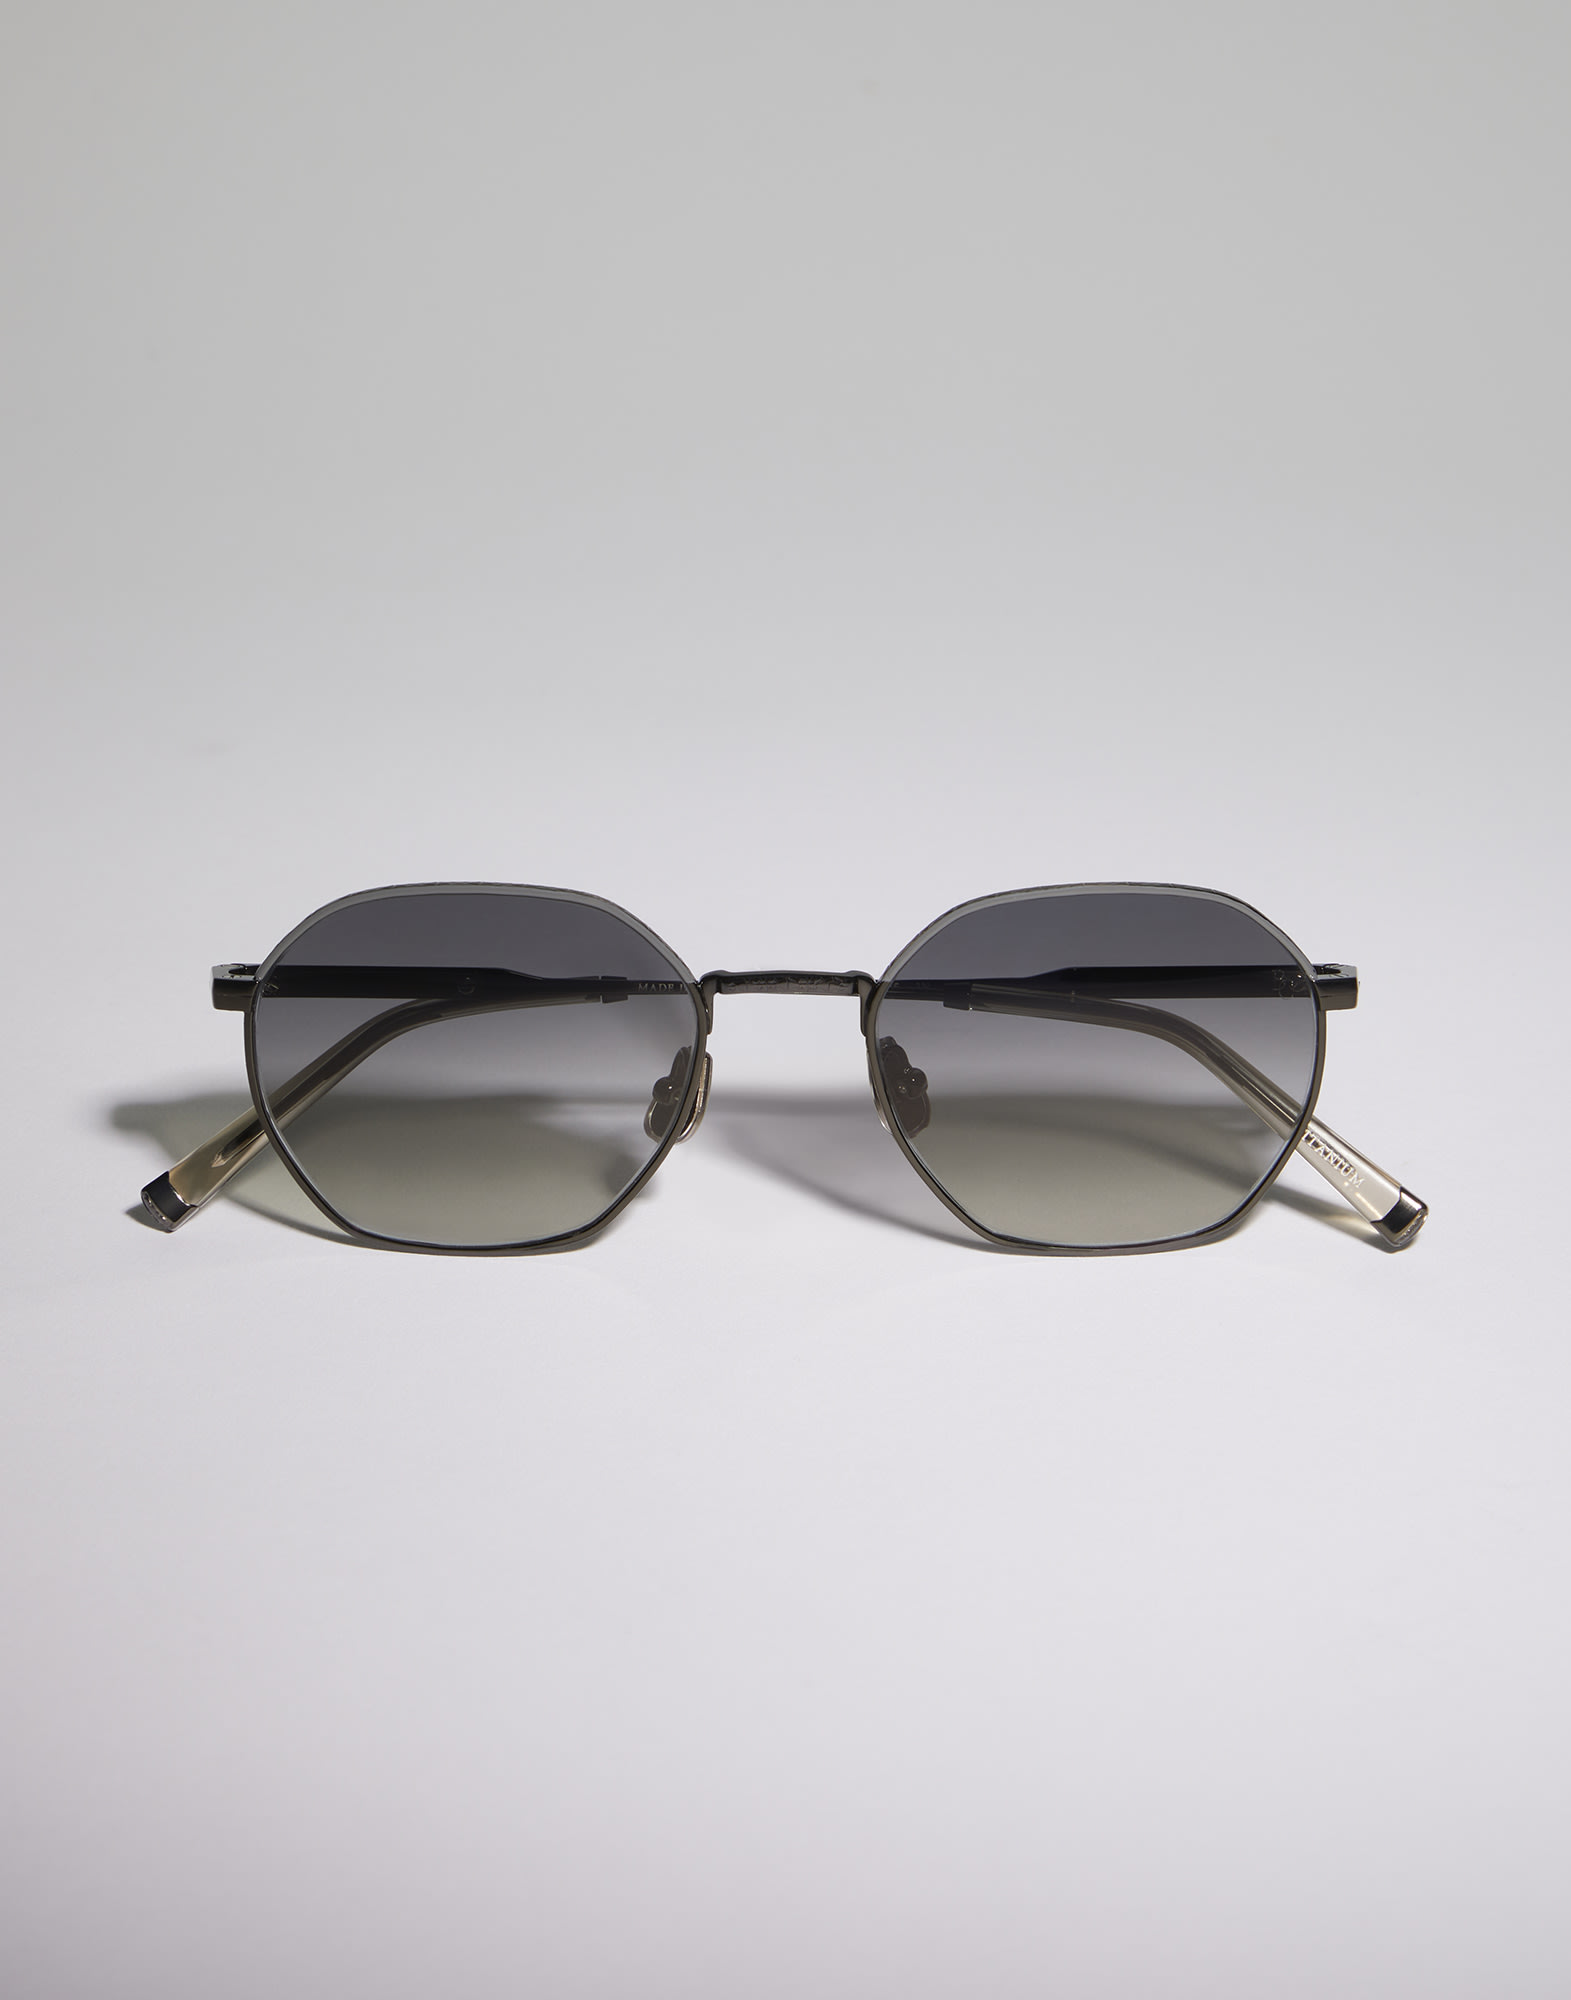 Titanium sunglasses